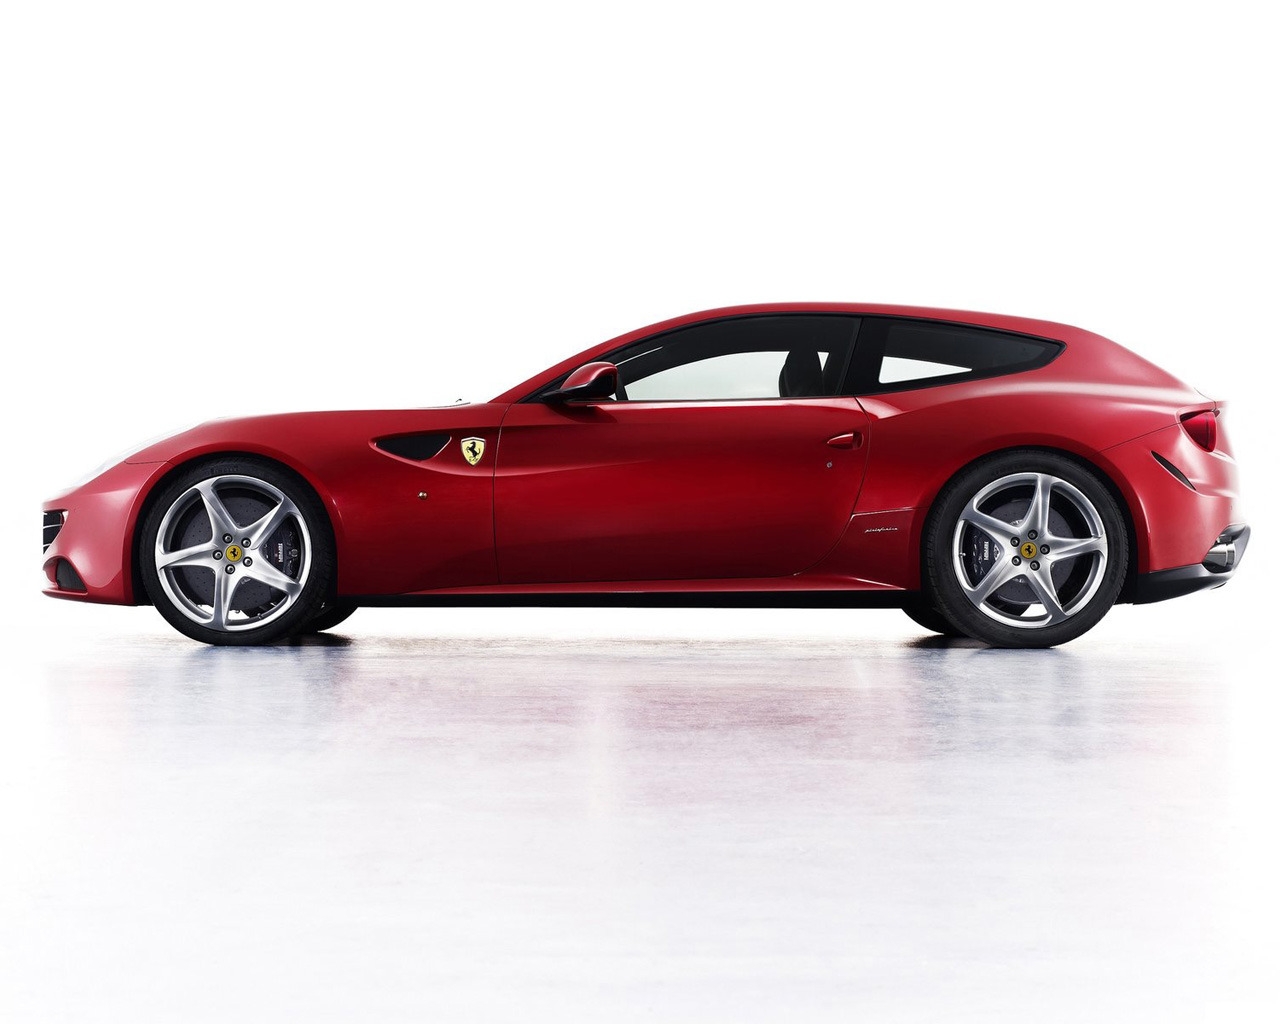 Ferrari FF 2011 for 1280 x 1024 resolution